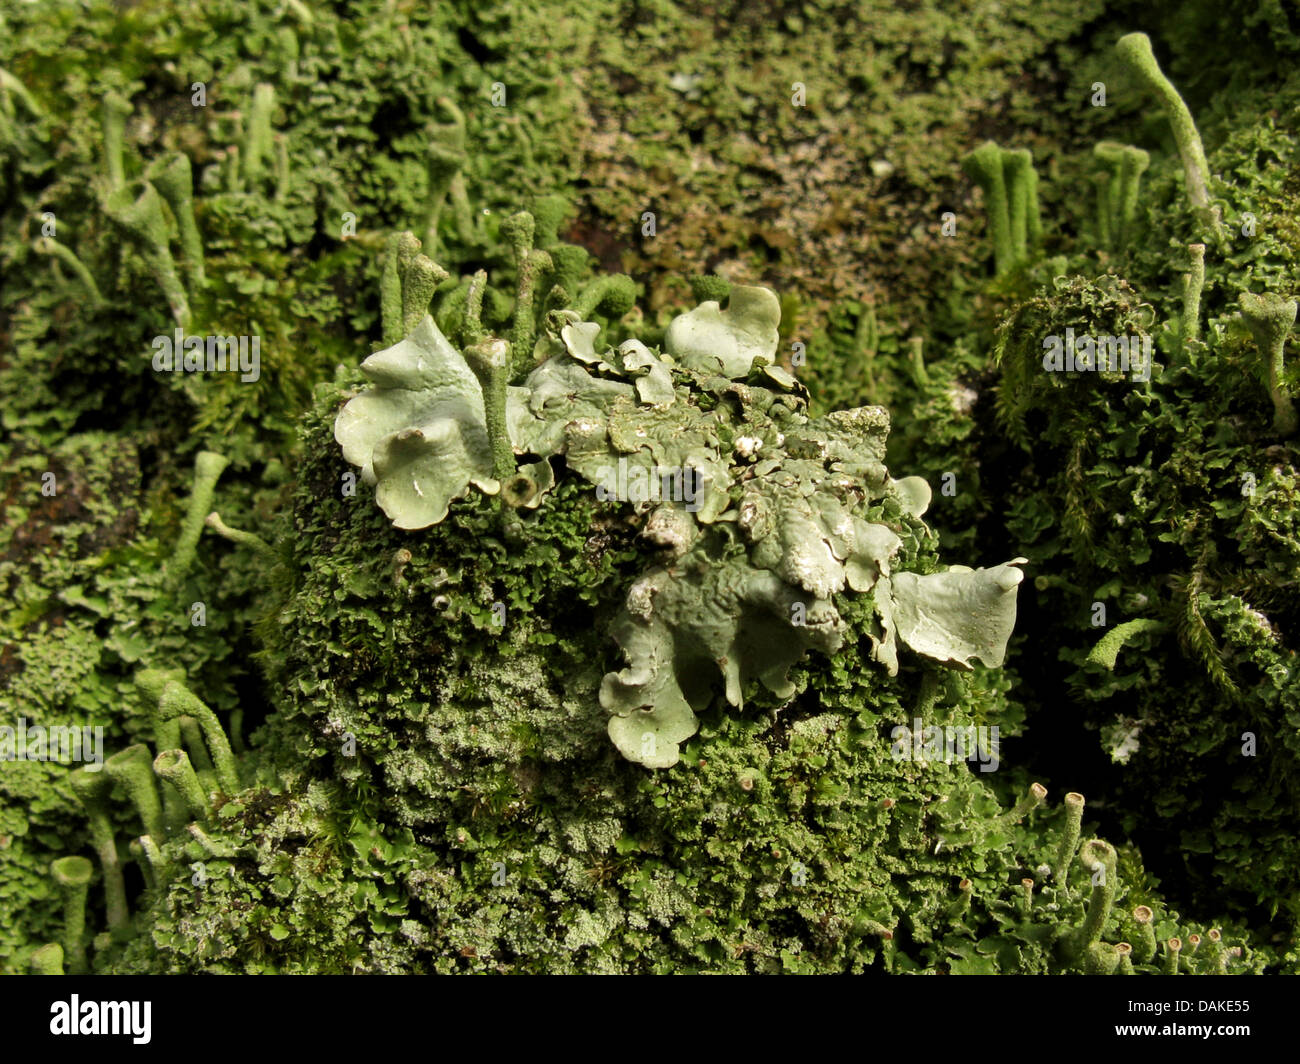 Common greenshield lichen  (Flavoparmelia caperata, Parmelia caperata), on bark with Cladonia, Germany Stock Photo